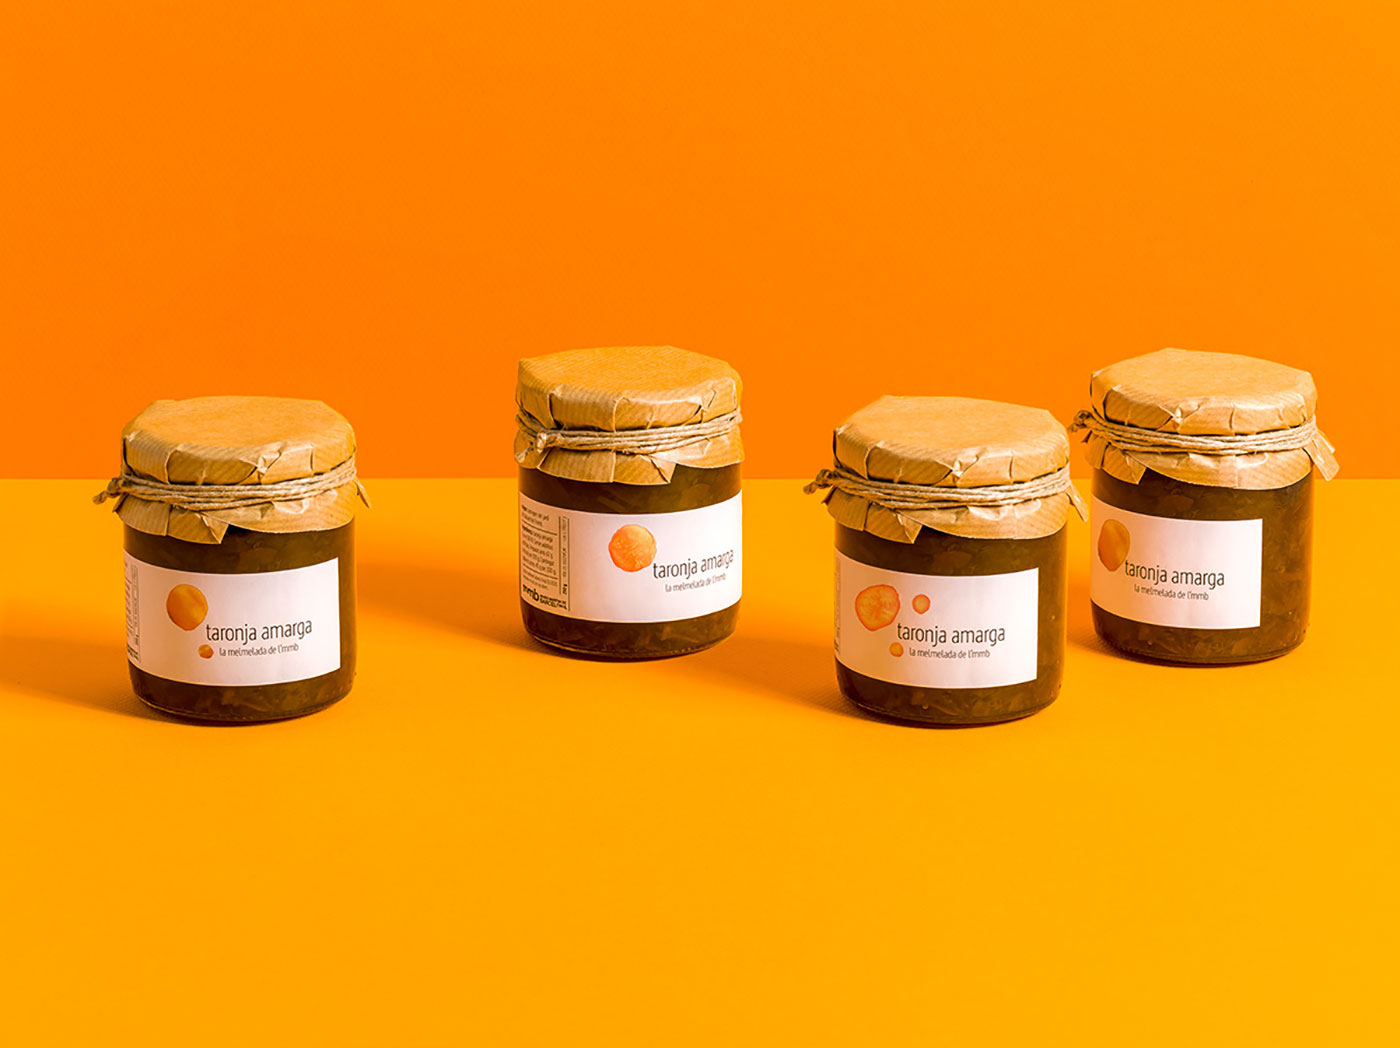 Organic packaging for homemade jam